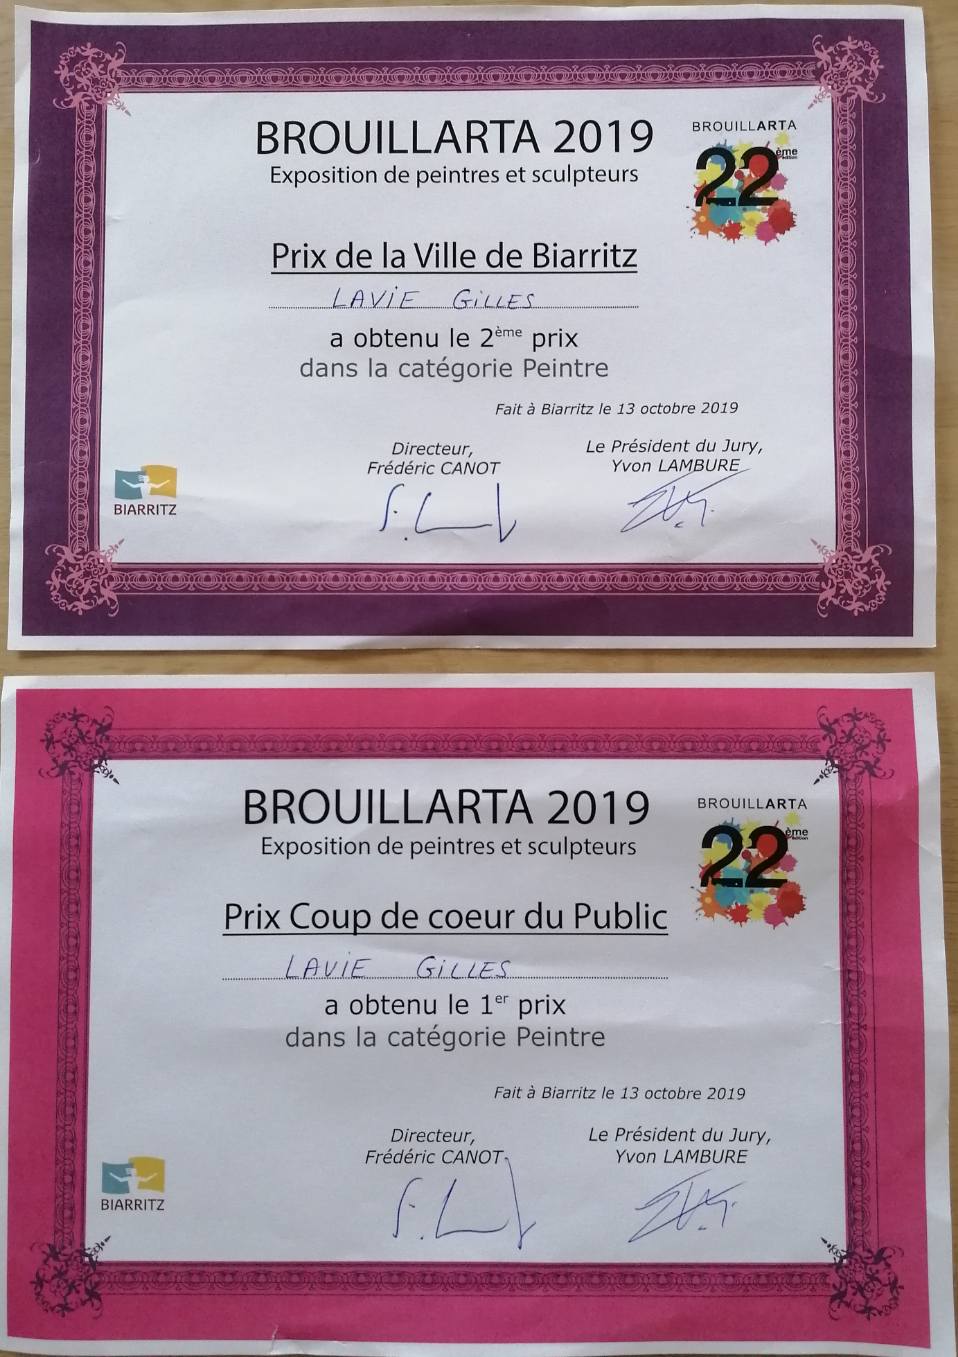 Récompenses reçues par Gilles Lavie pour l'exposition Brouillarta 2019 à Biarritz